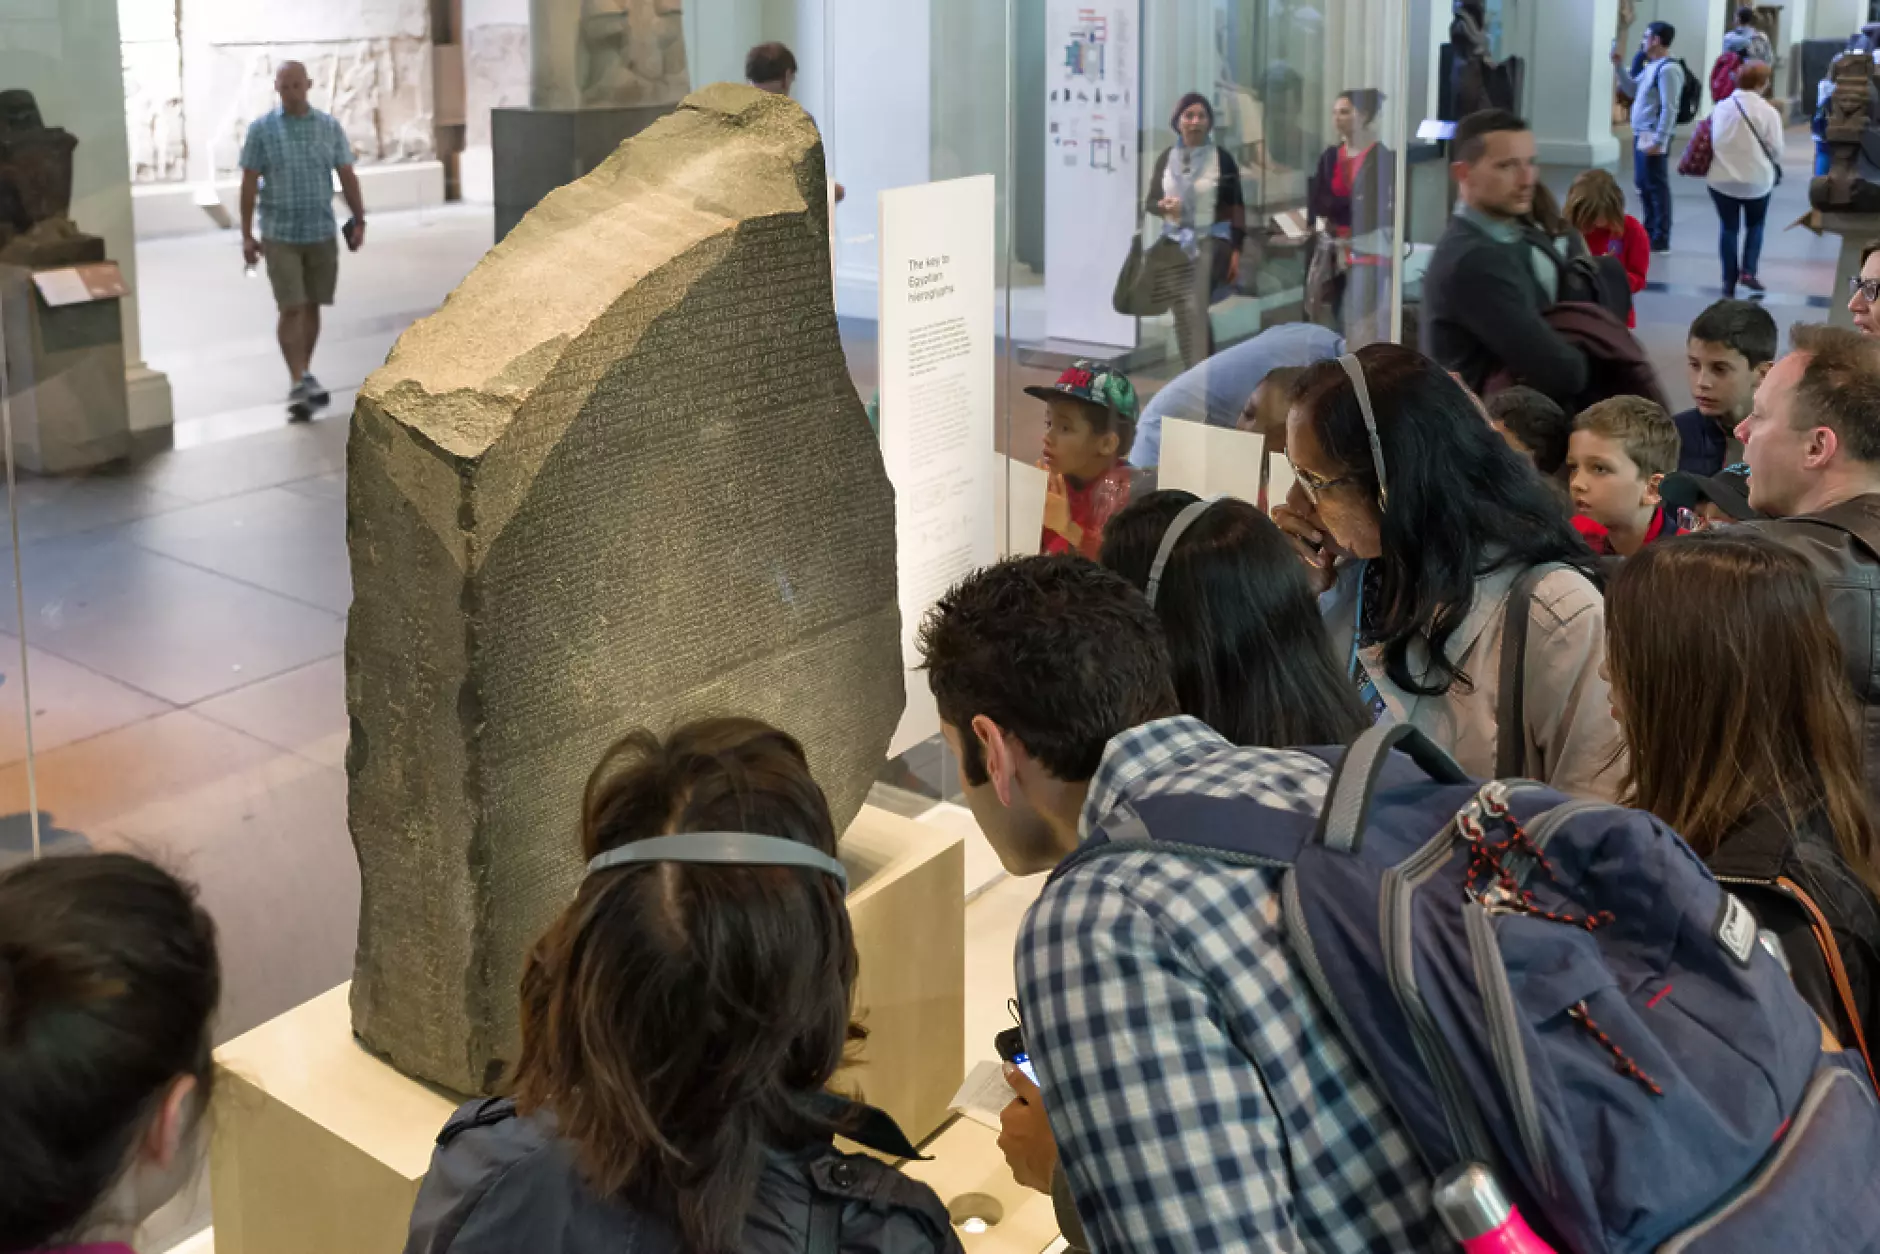 2500 археолози настояват Британският музей да върне на Египет Розетския камък 